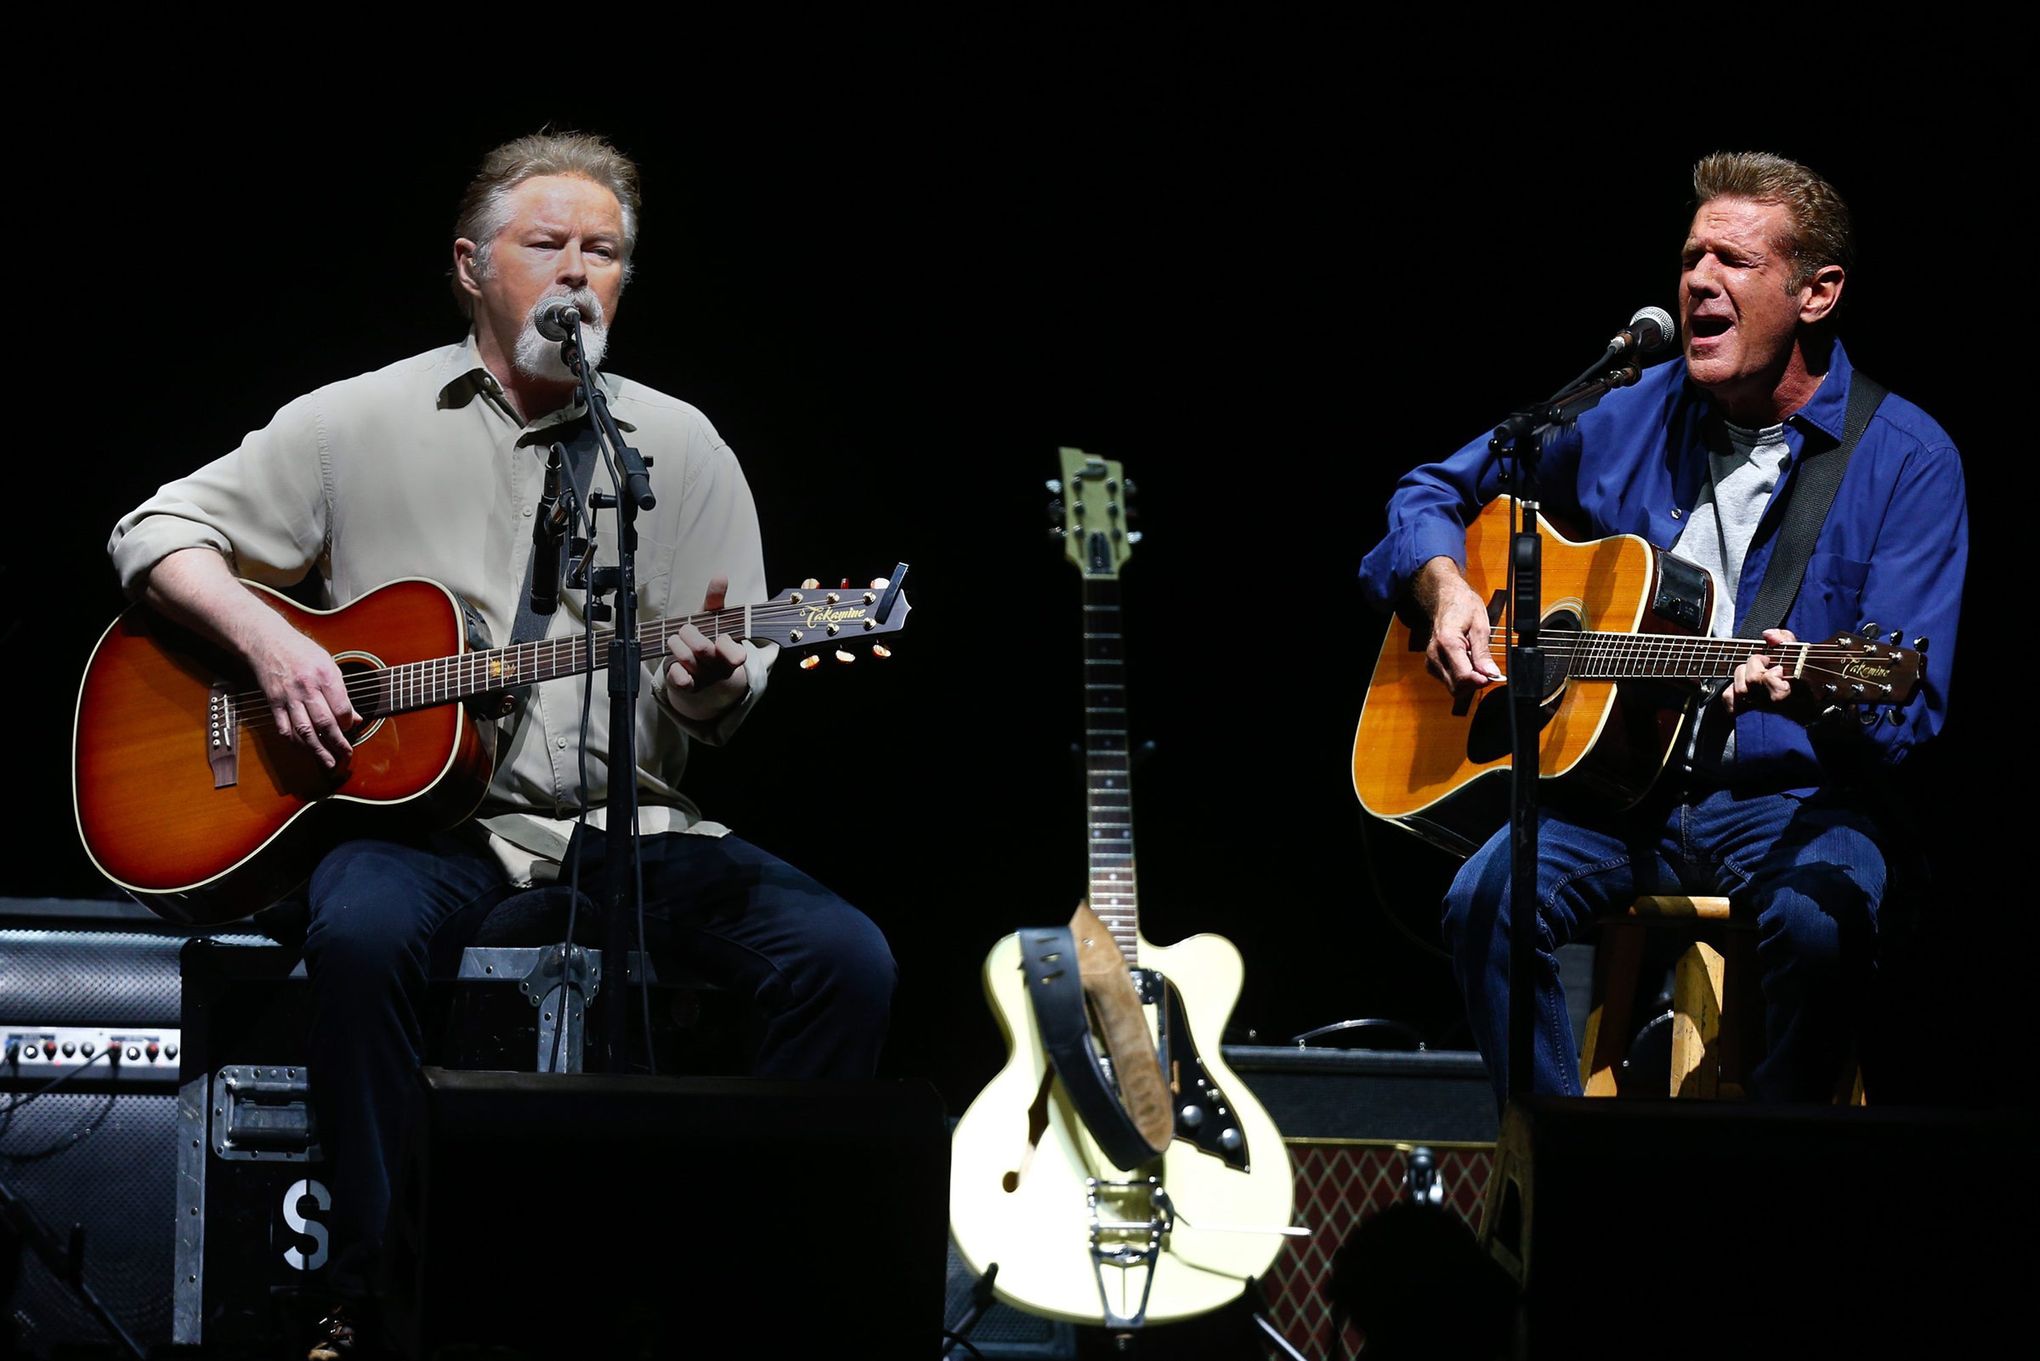 Eagles founder singer/songwriter for the Eagles, Glenn Frey, dies